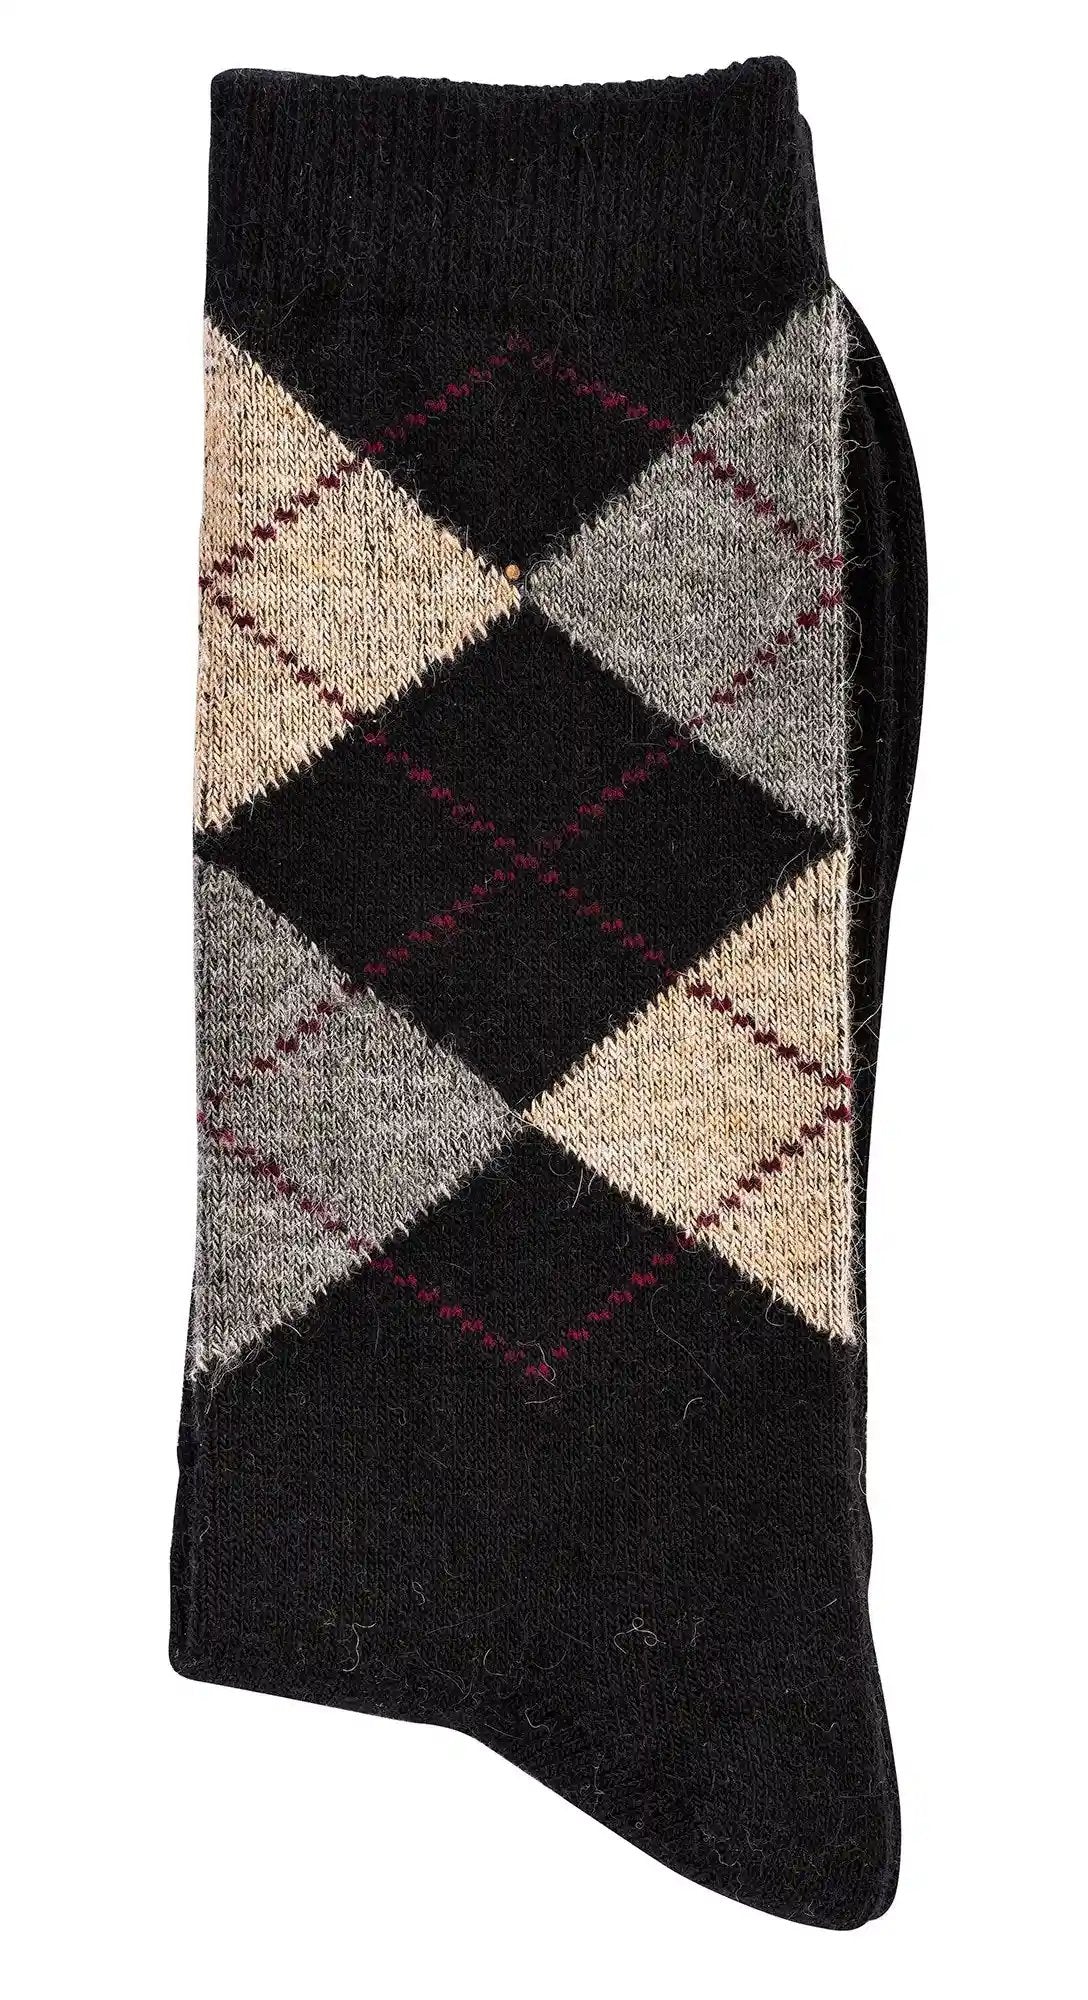 3 o 6 pares de calcetines de cuadros con lana de alpaca para hombre y mujer